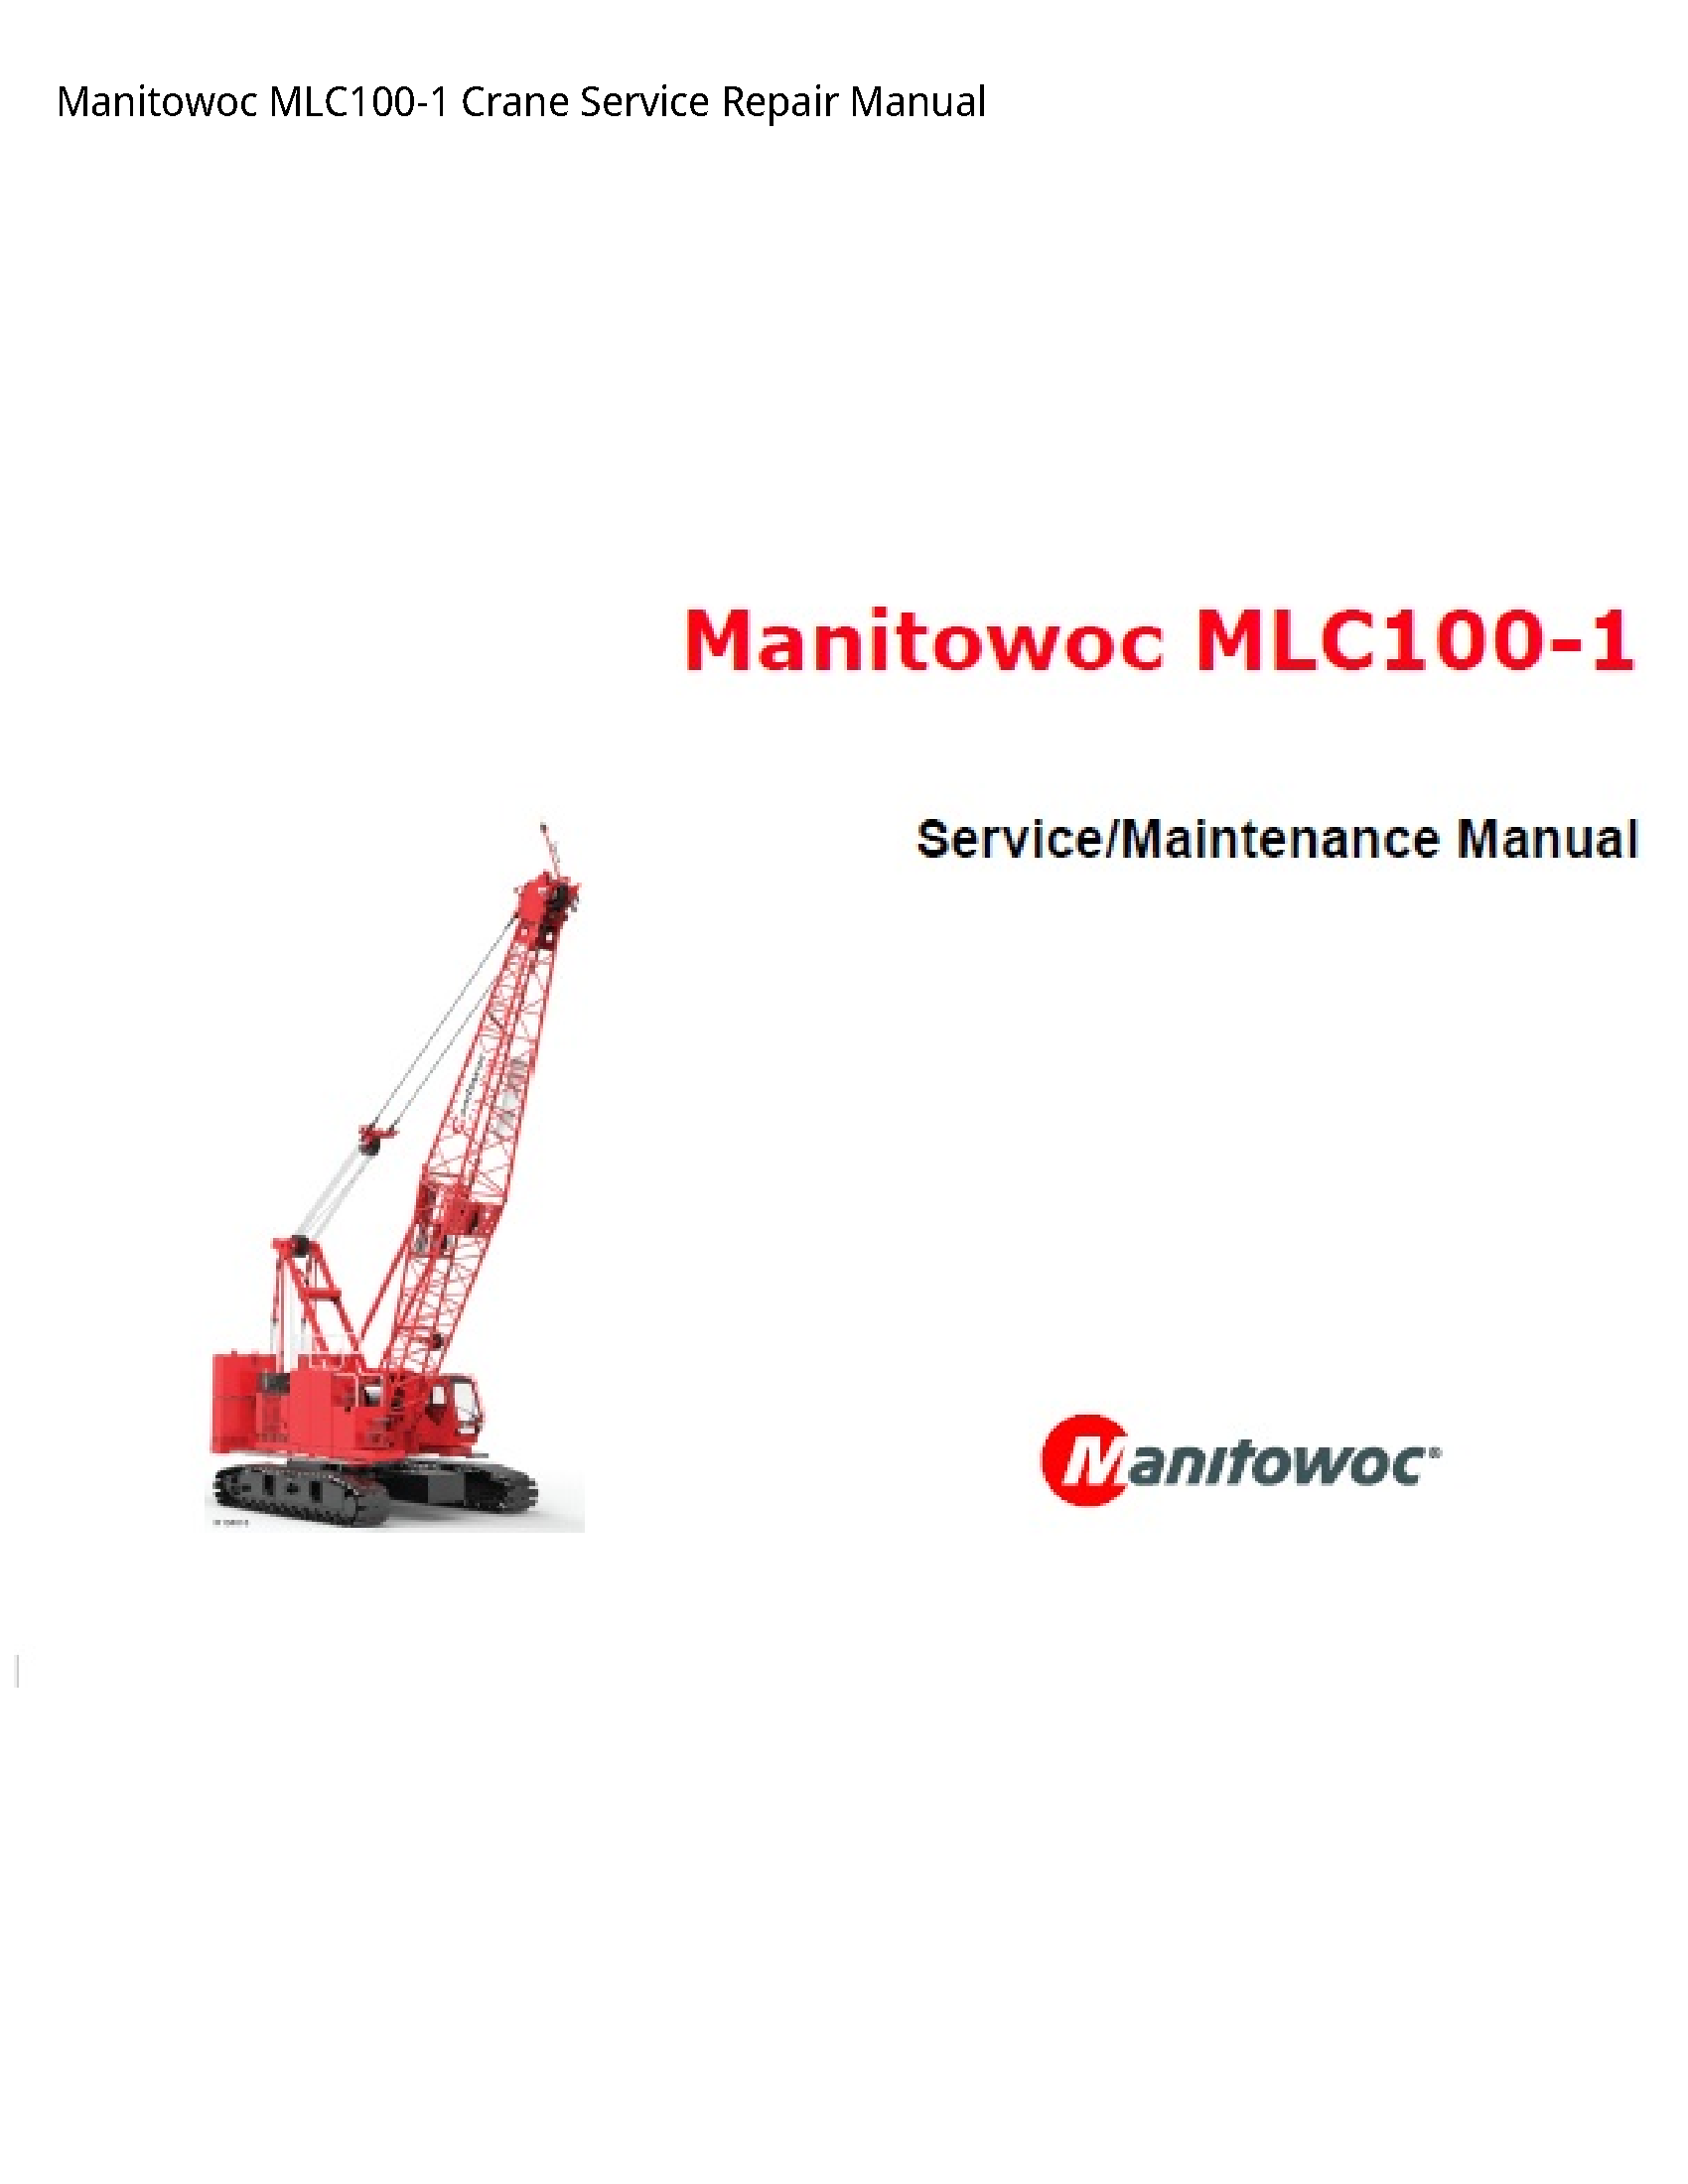 Manitowoc MLC100-1 Crane manual